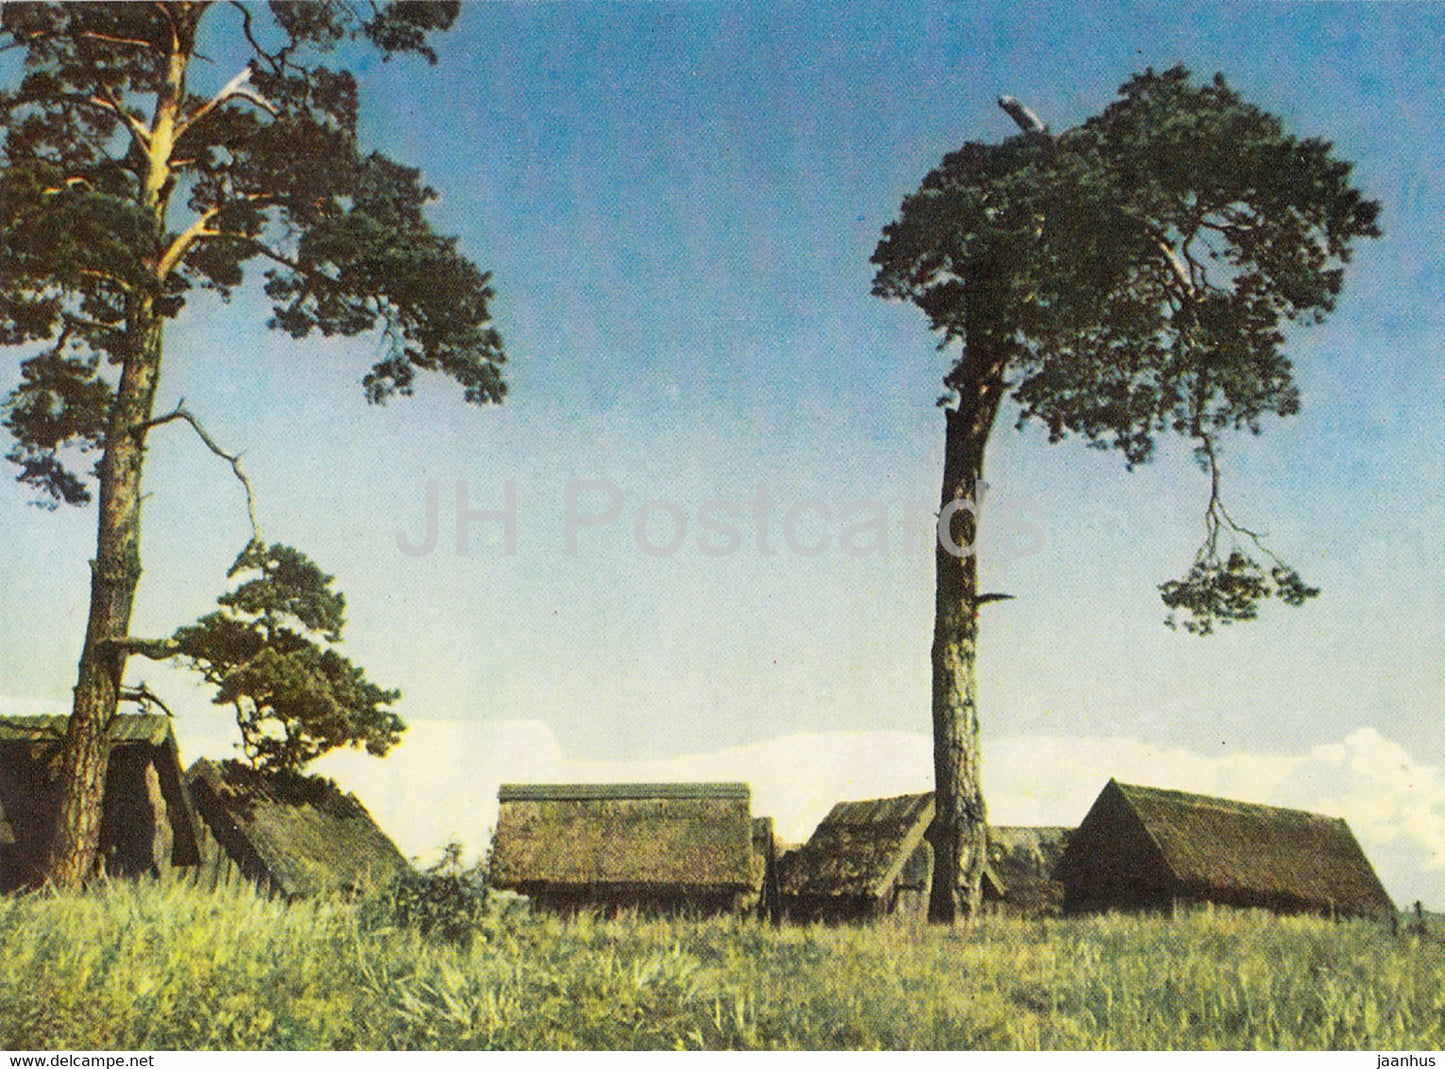 Jurmala - Net Cabins in Lapmezciems - Latvia USSR - unused - JH Postcards